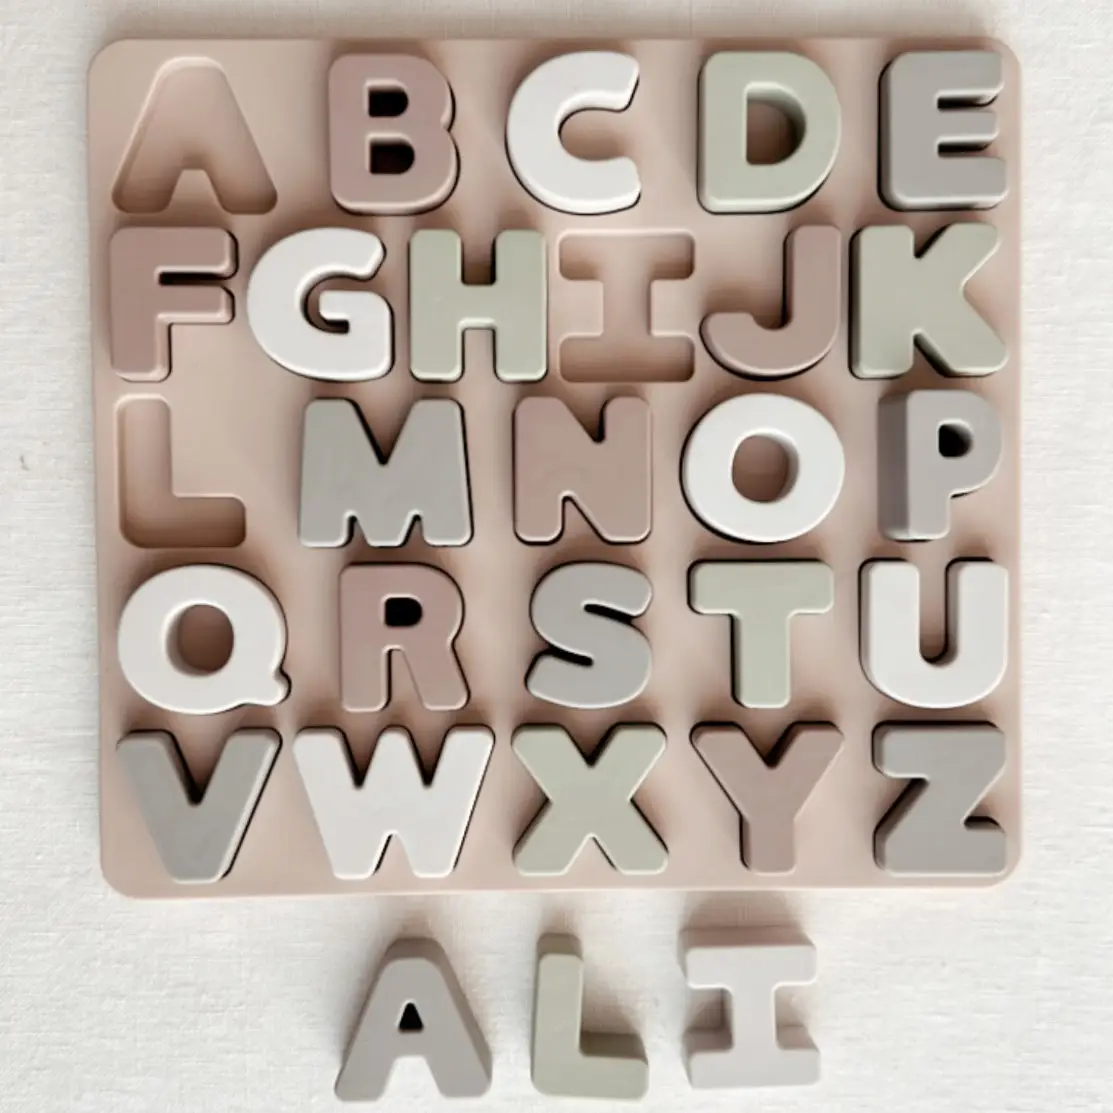 Large ABC Soft Silicone Puzzle - Ali + Oli